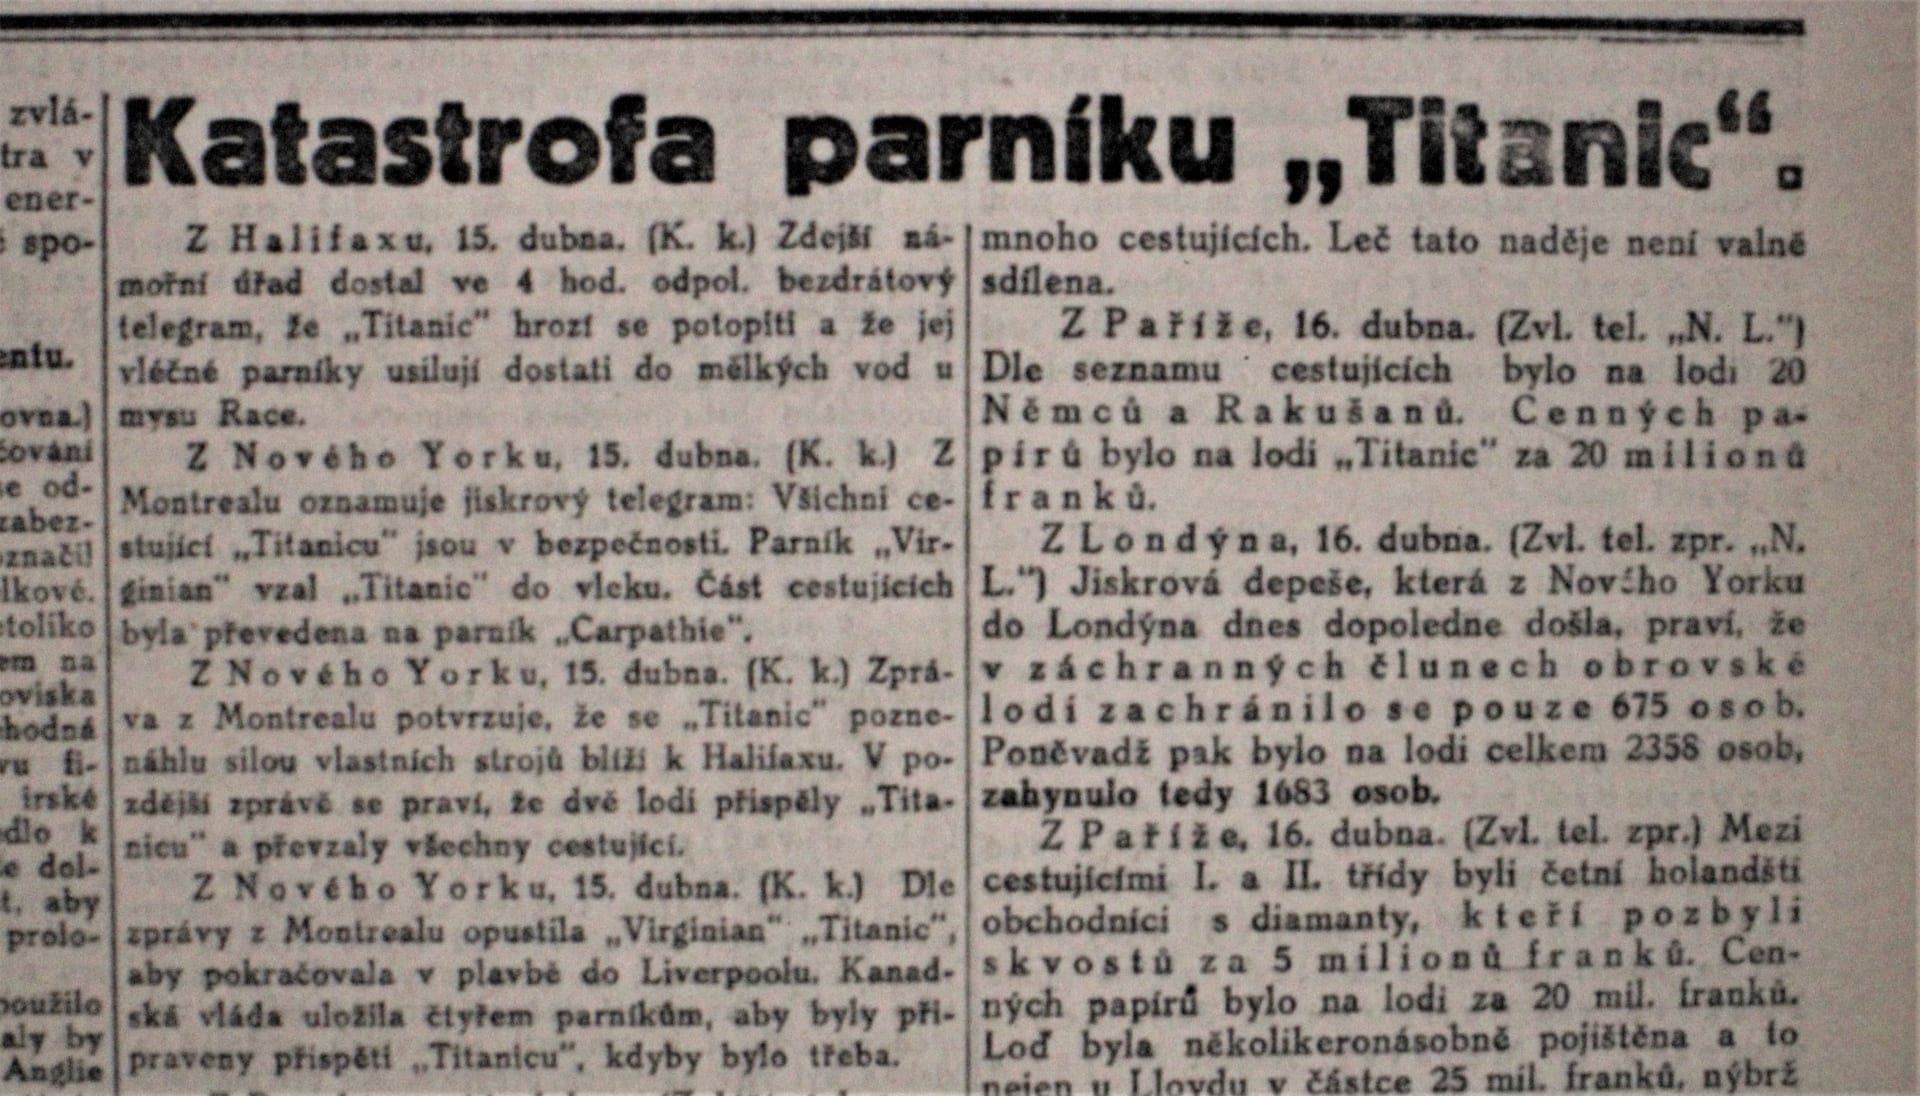 Zprávy a ilustrace z dobového českého tisku z dubna 1912 pocházejí z veřejného digitálního archivu Národní knihovny v Praze.